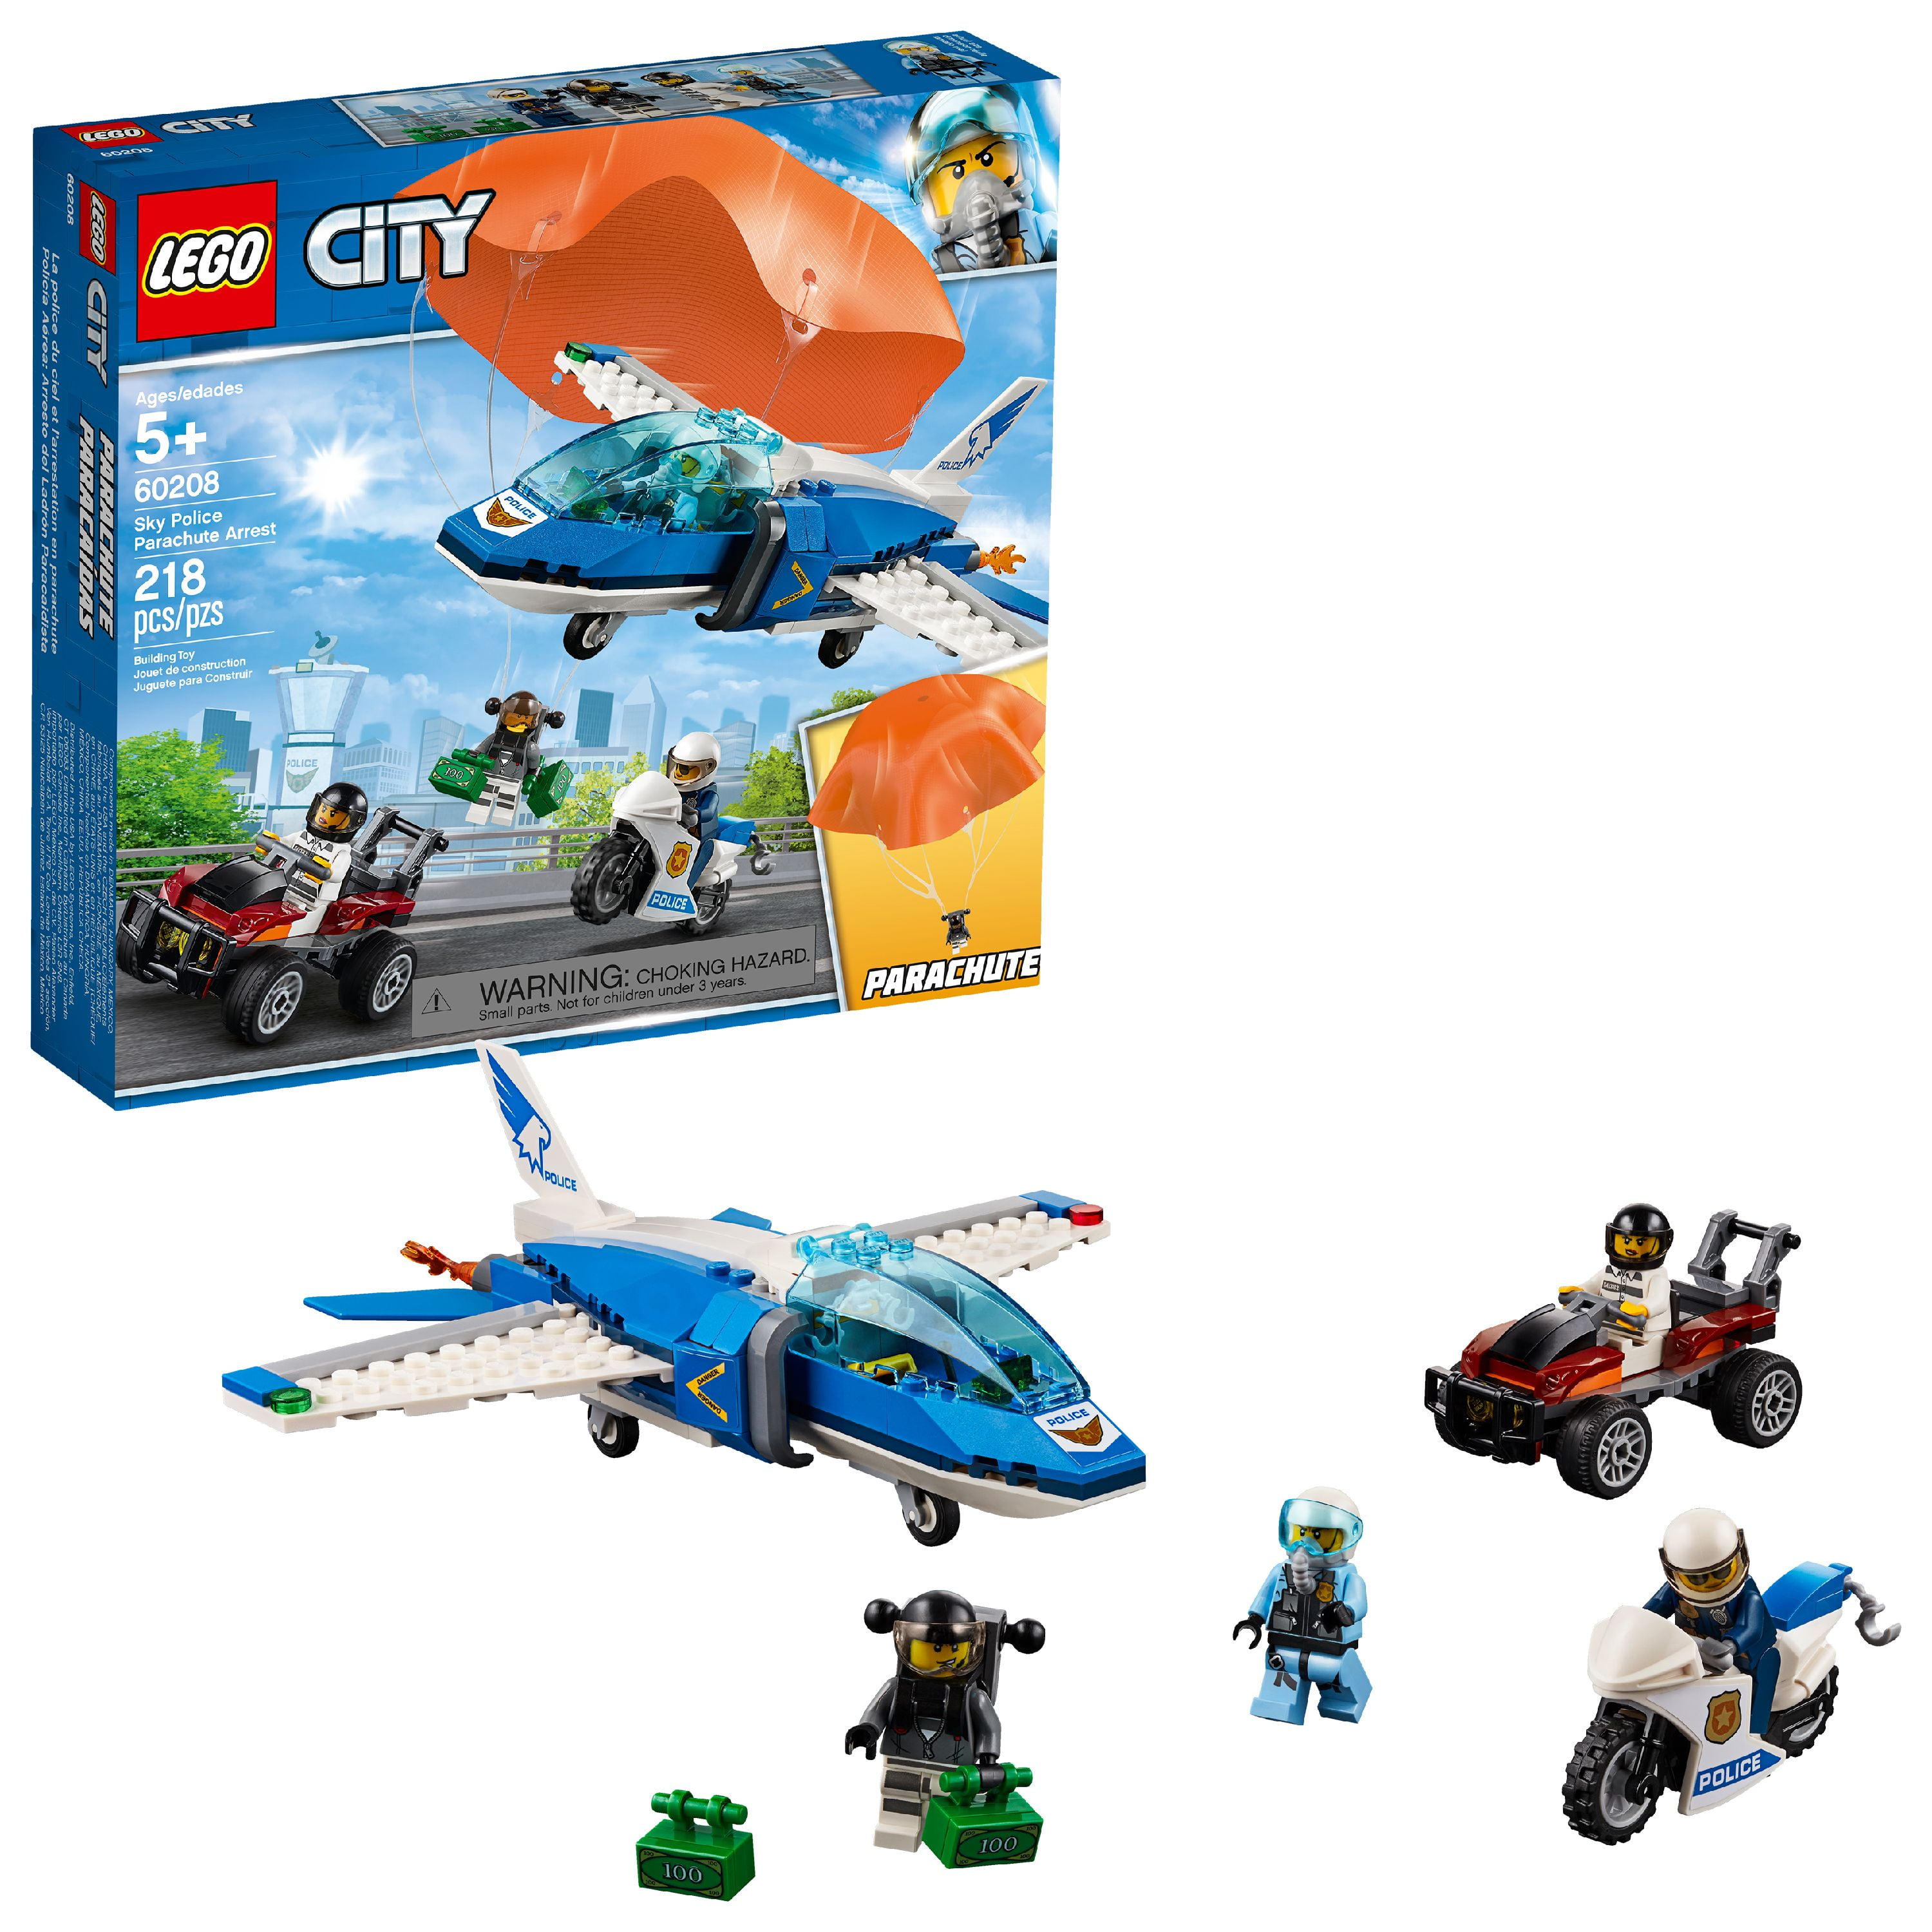 LEGO City Police Sky Police Parachute Arrest 60208 Police Jet Toy